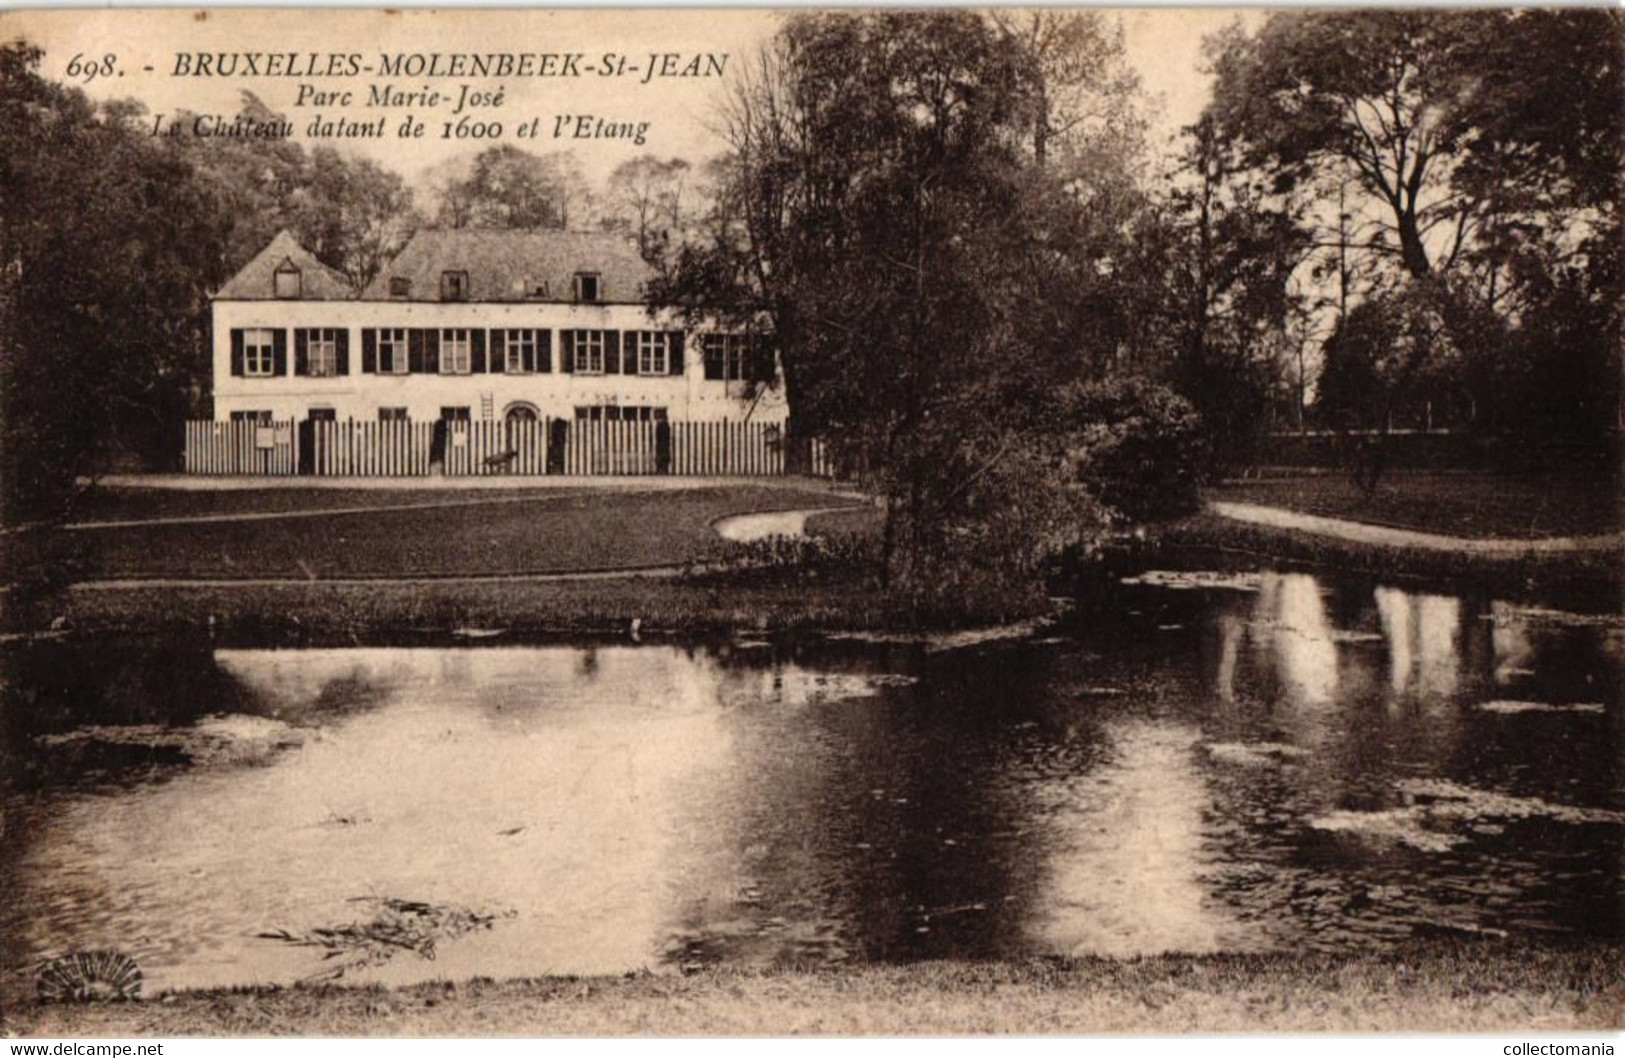 5 CP Molenbeek St.Jean  Parc Marie-José   L' Etang Le Château  Pont Rustique  1923  1929 - St-Jans-Molenbeek - Molenbeek-St-Jean